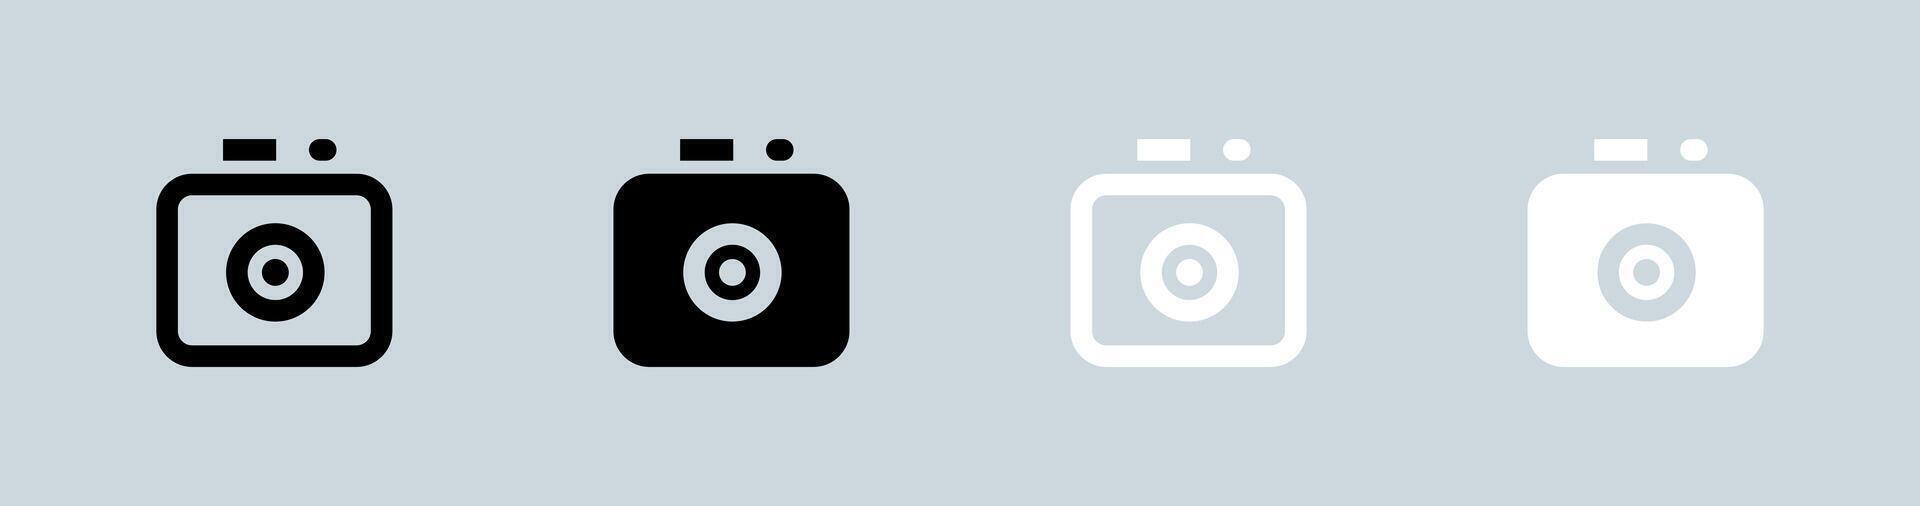 Kamera Symbol einstellen im schwarz und Weiß. Erfassung Tasten Zeichen Vektor Illustration.